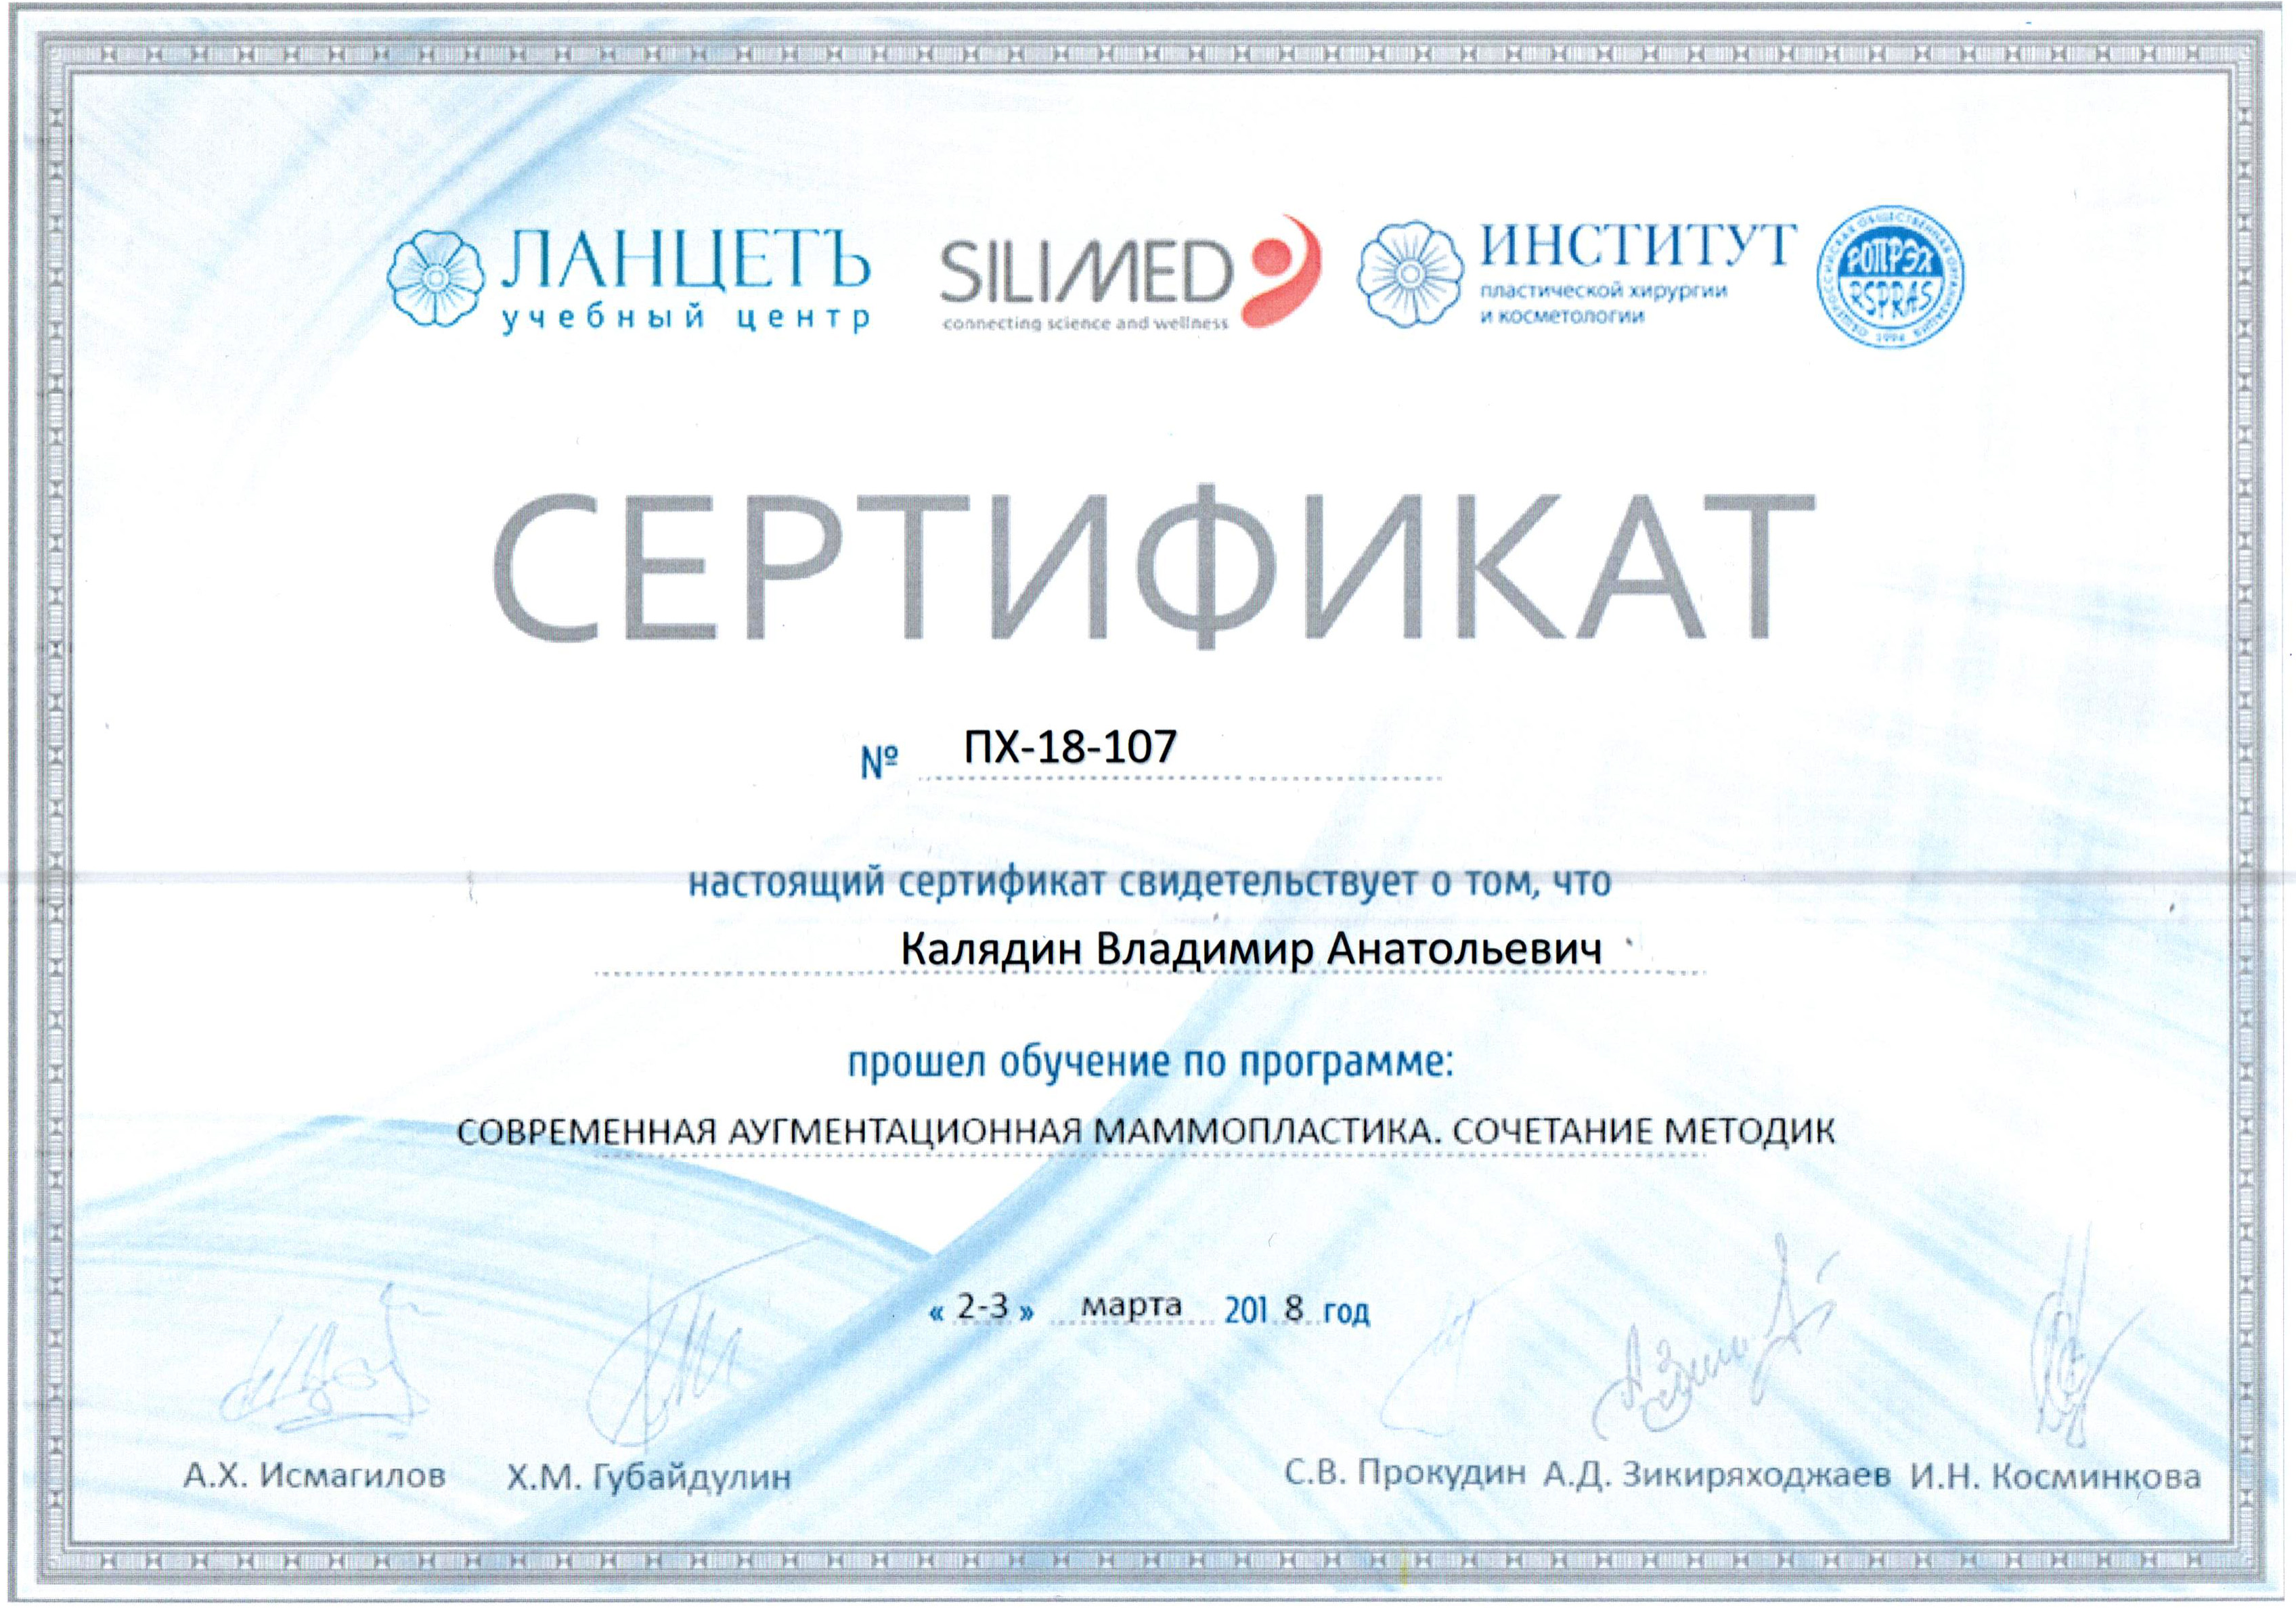 Сертификат о прохождении обучения 2-3 марта 2018. Современная аугментационная маммопластика. Сочетание методик.